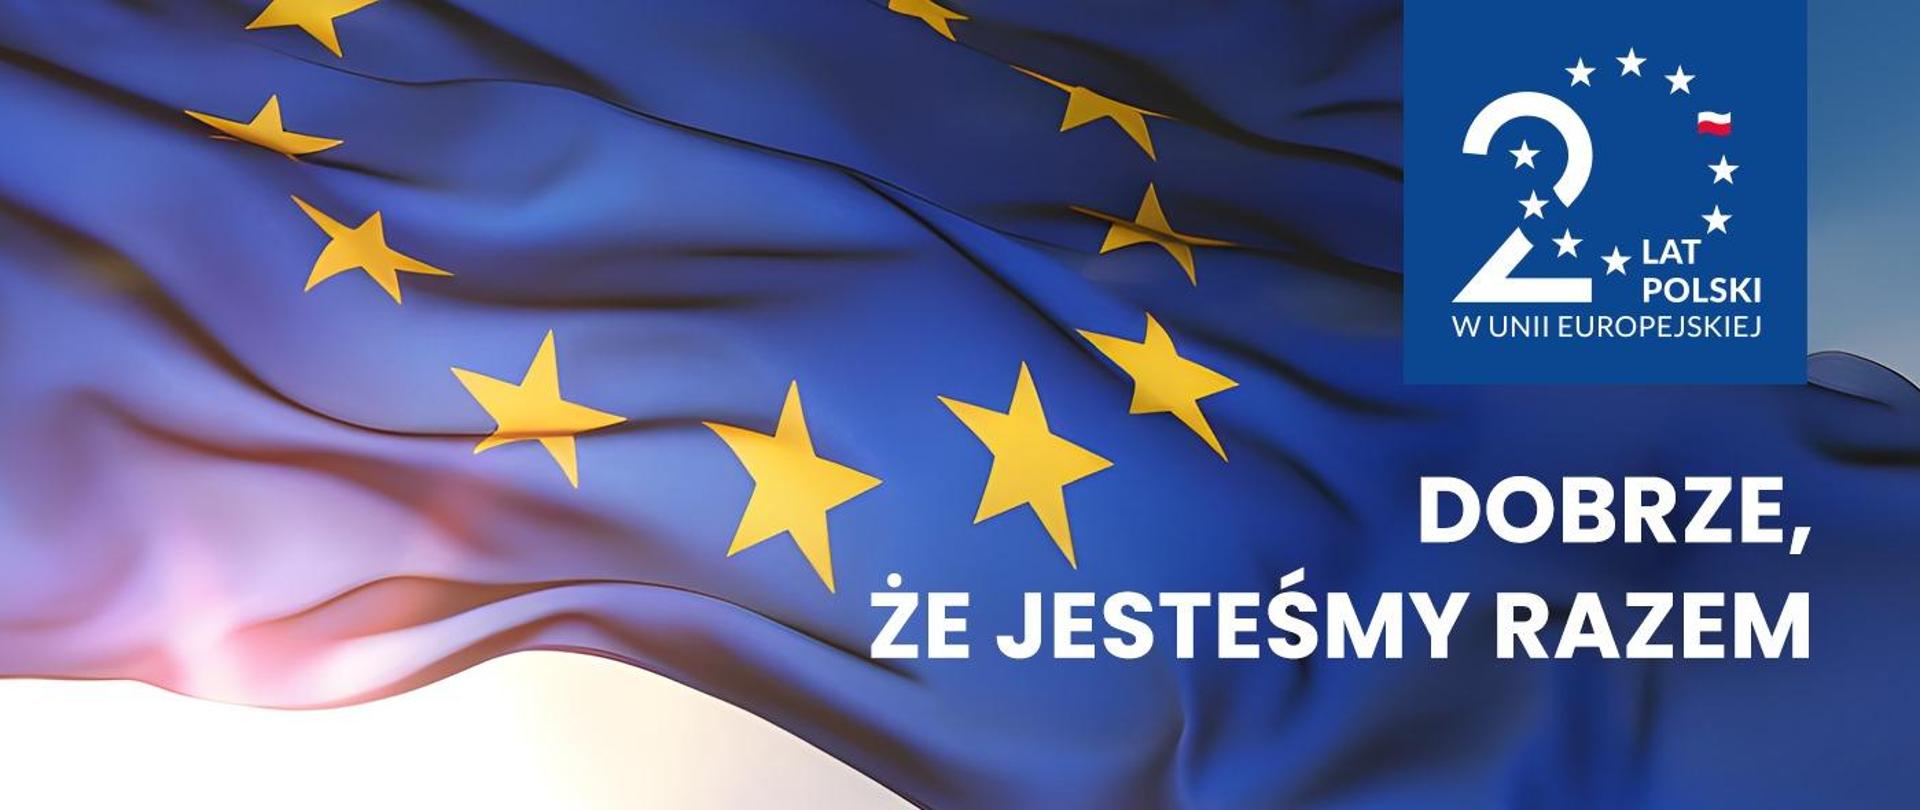 Grafika - powiewająca flaga UE i napis Dobrze, że jesteśmy razem.